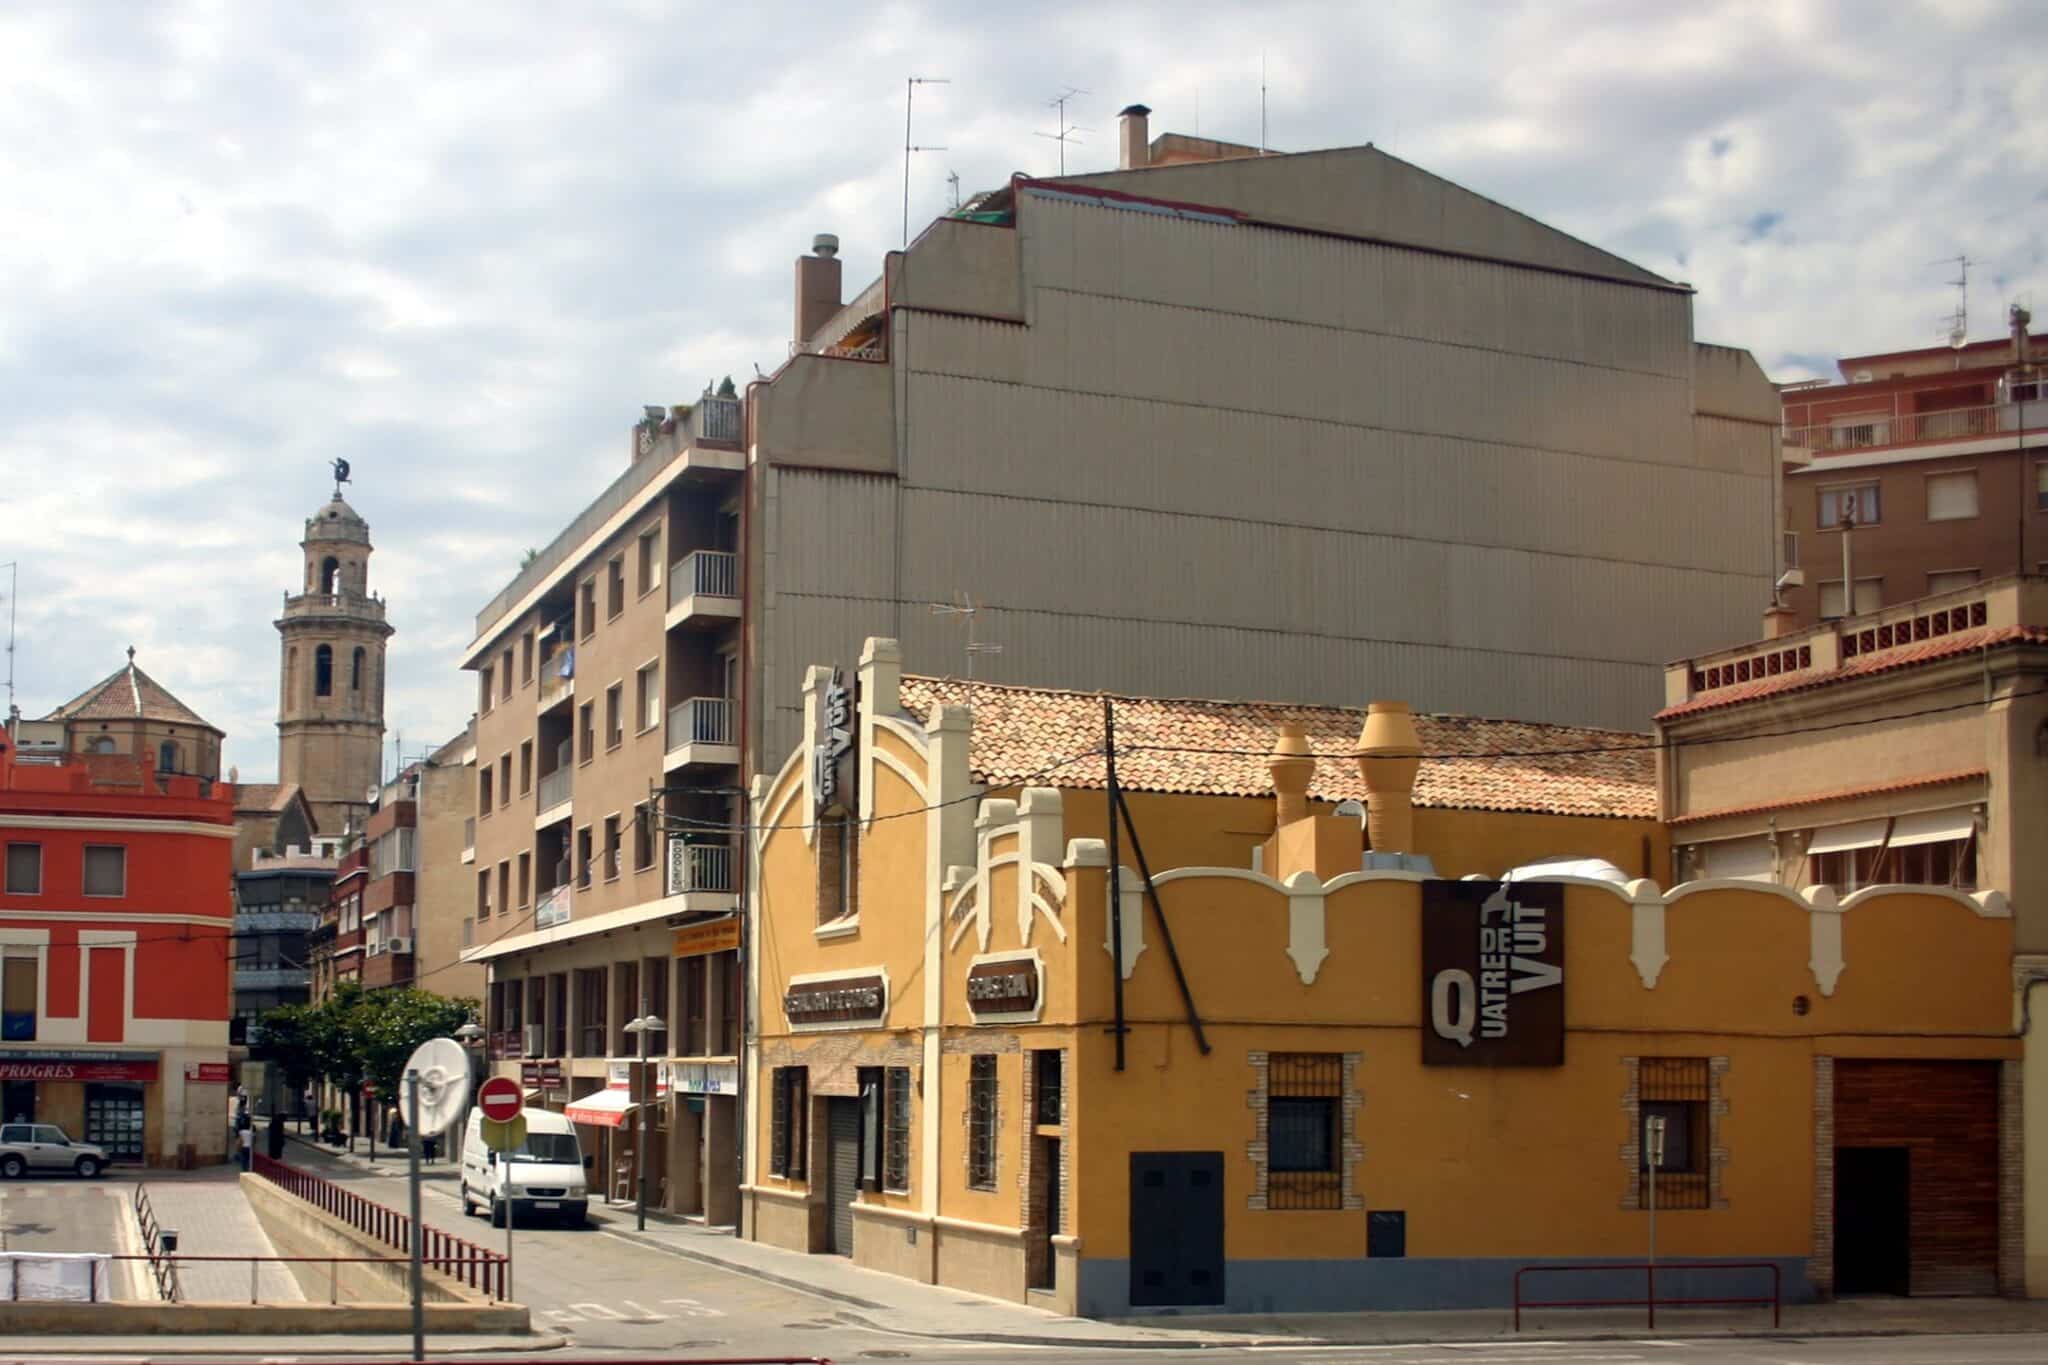 Edificios de color amarillo y blanco con una vía circular en medio. Es Vendrell,Tarragona